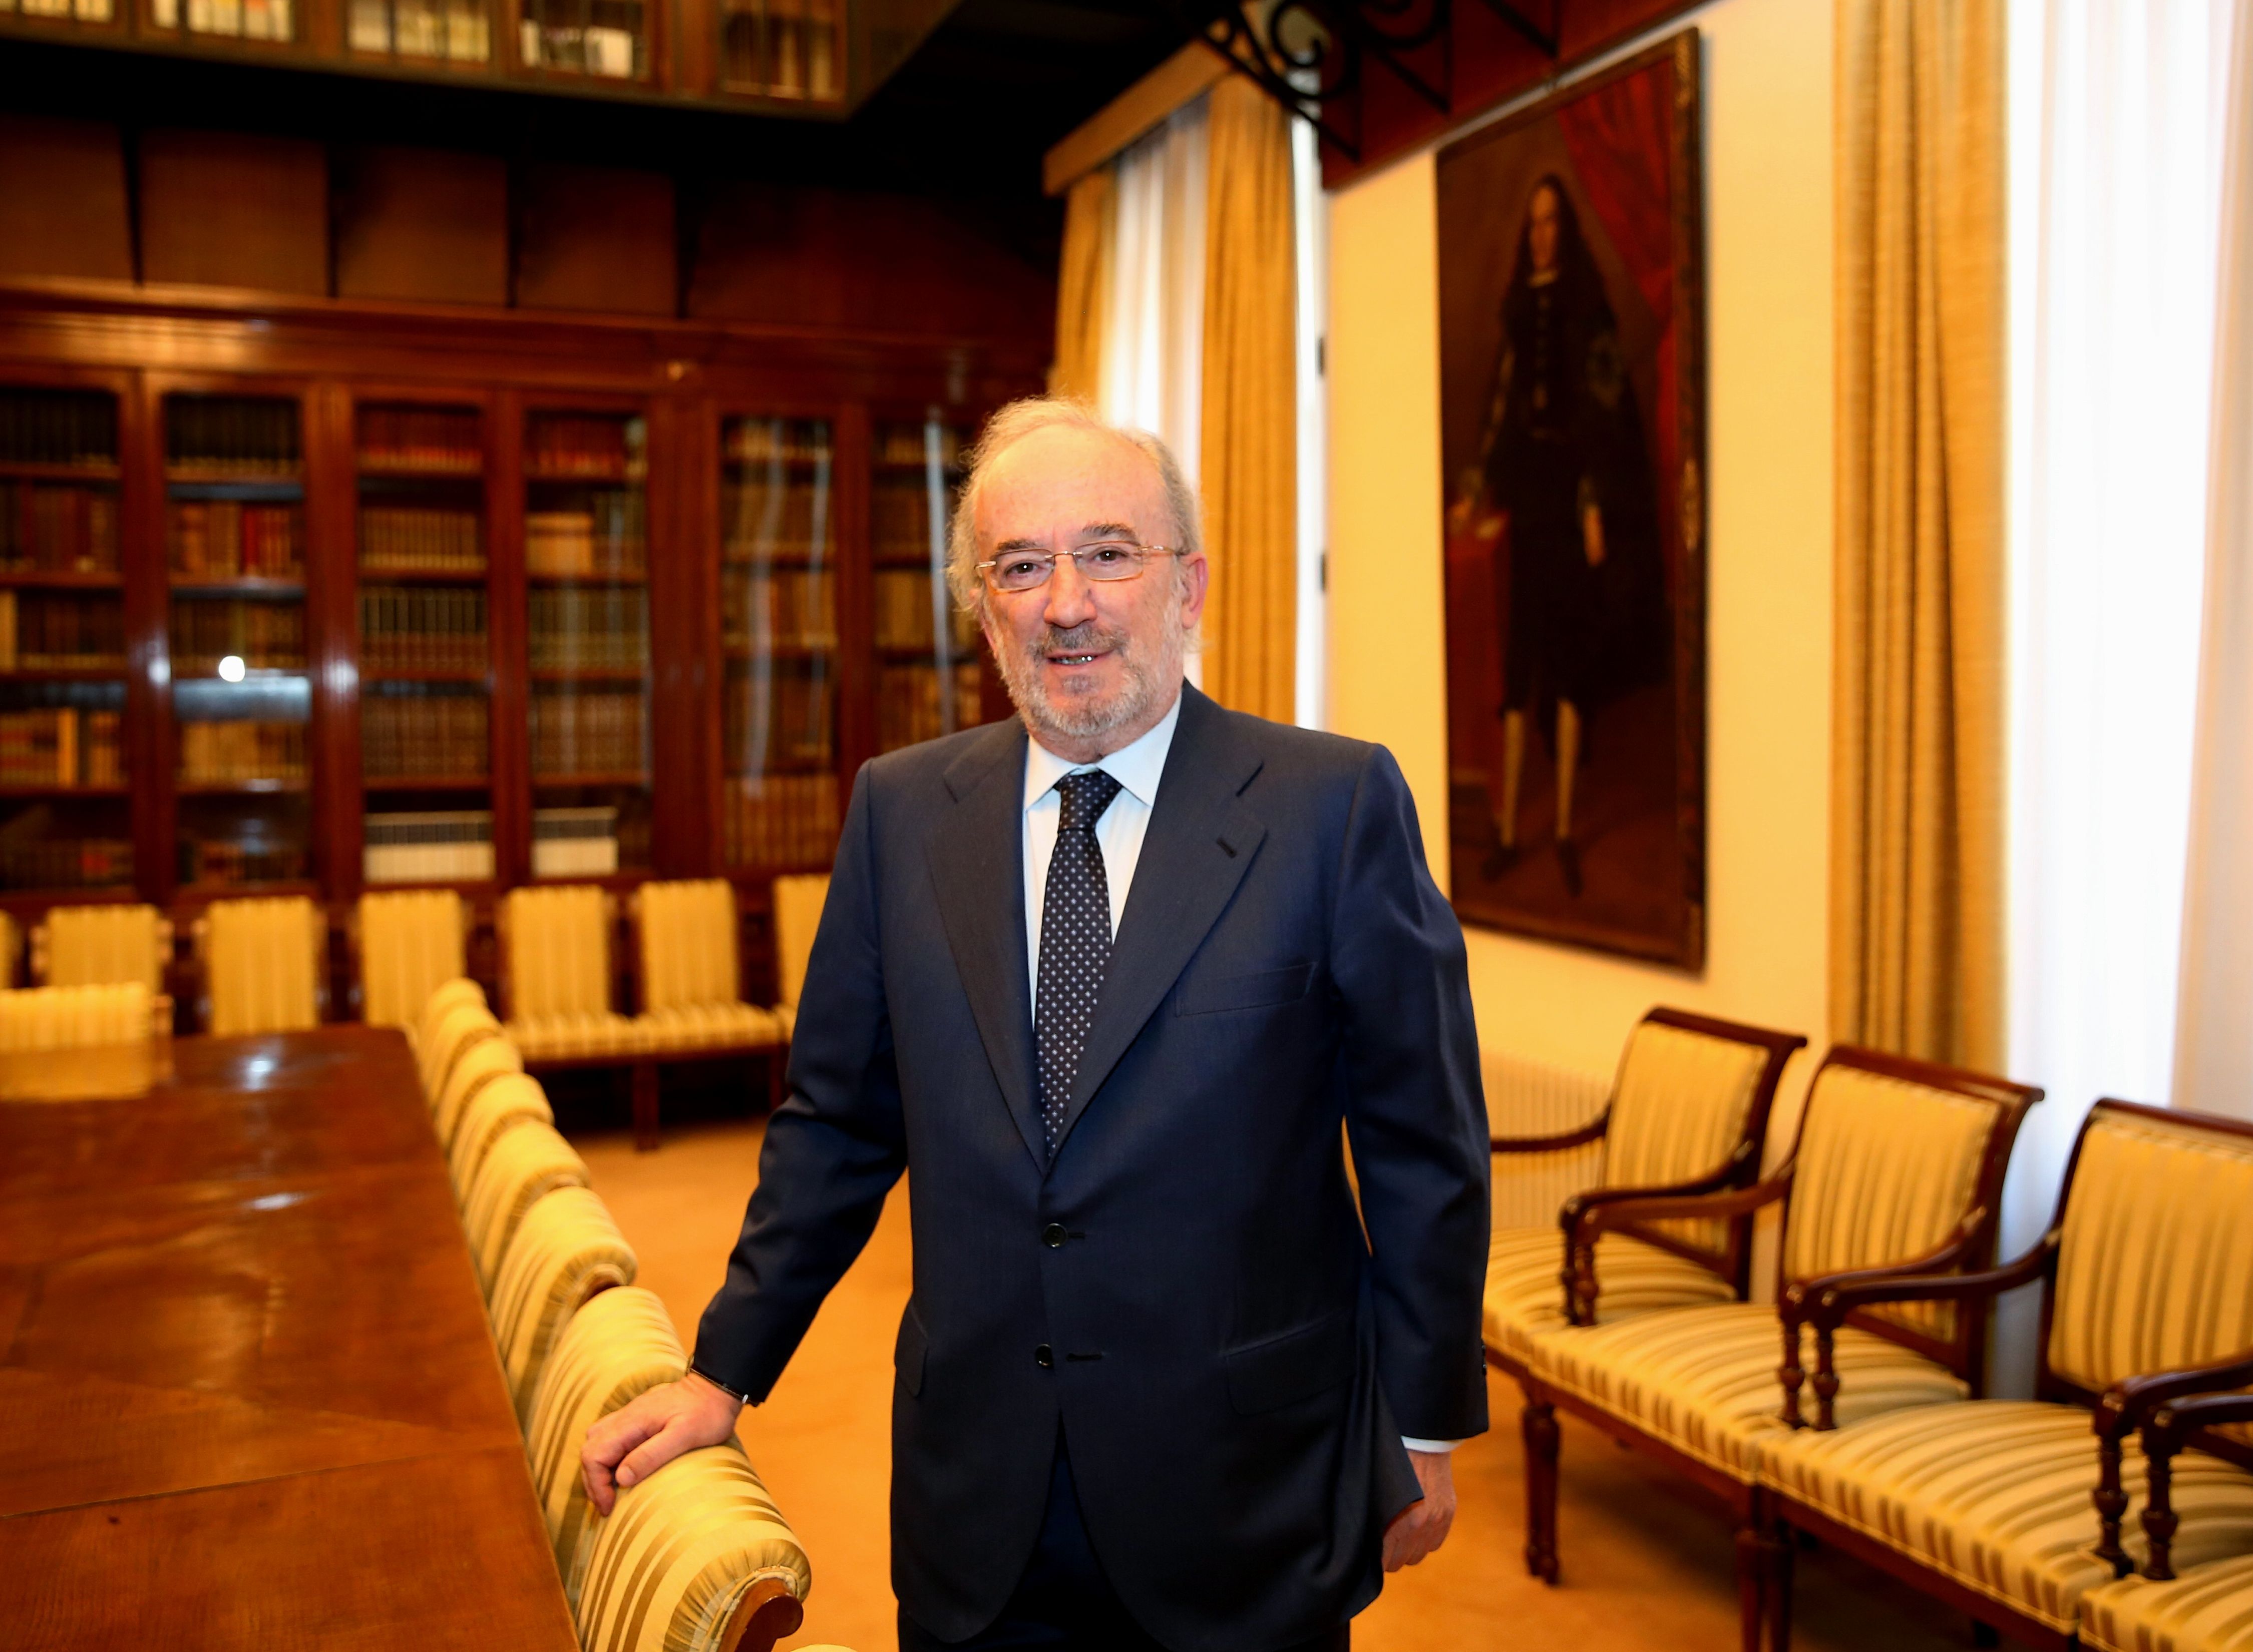 Un jurista derrota Juan Luis Cebrián a les eleccions per dirigir la RAE